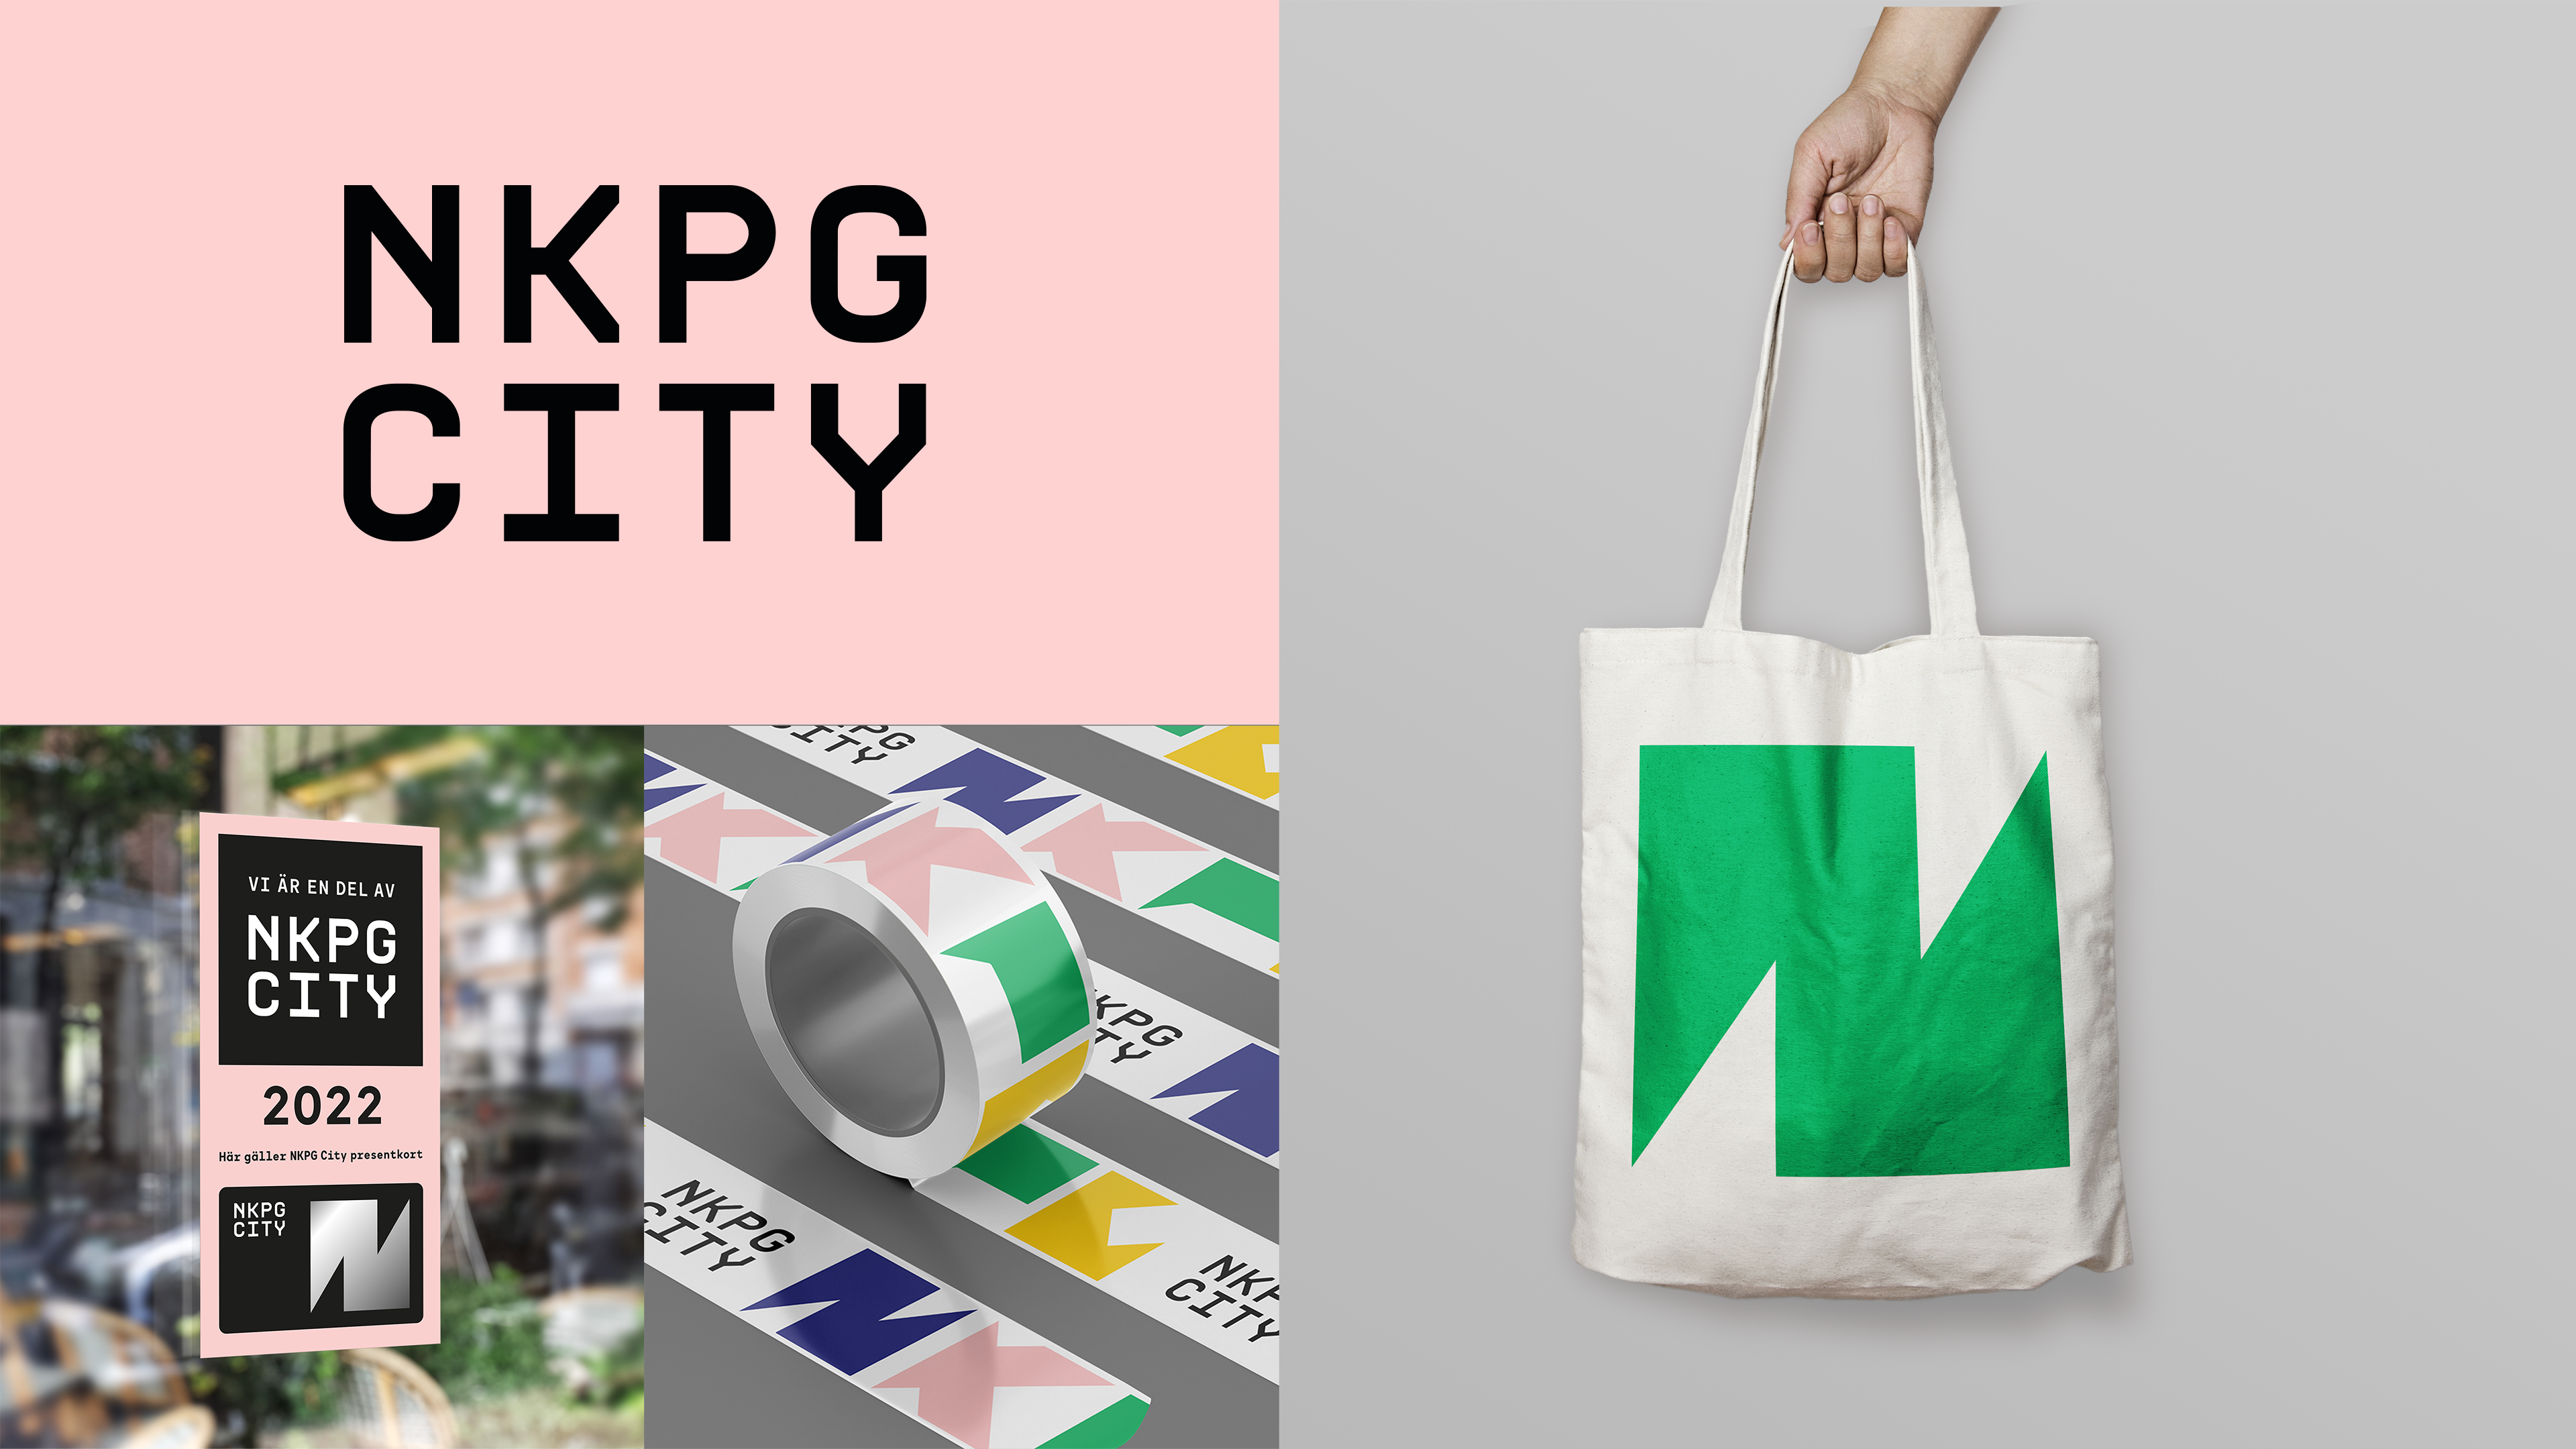 NKPG City brand platform - tape, cloth bag and logo_2